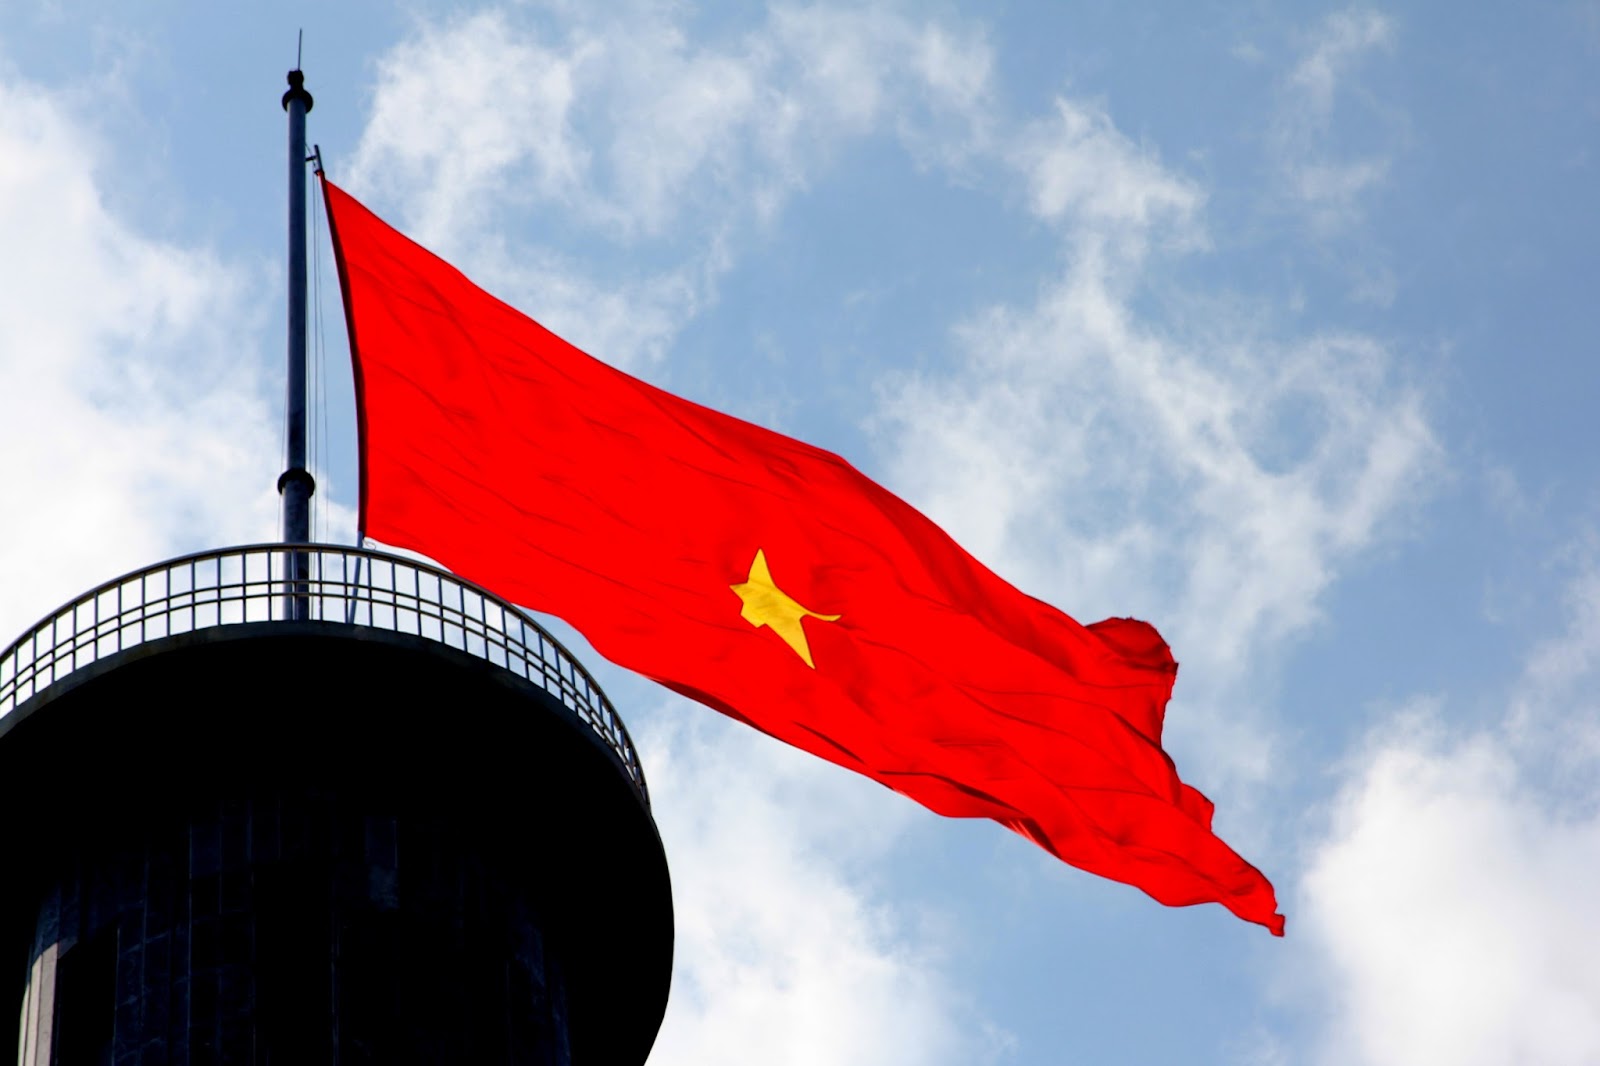 Hình lá cờ Việt Nam ảnh quốc kỳ đẹp, rõ, sắc nét-2